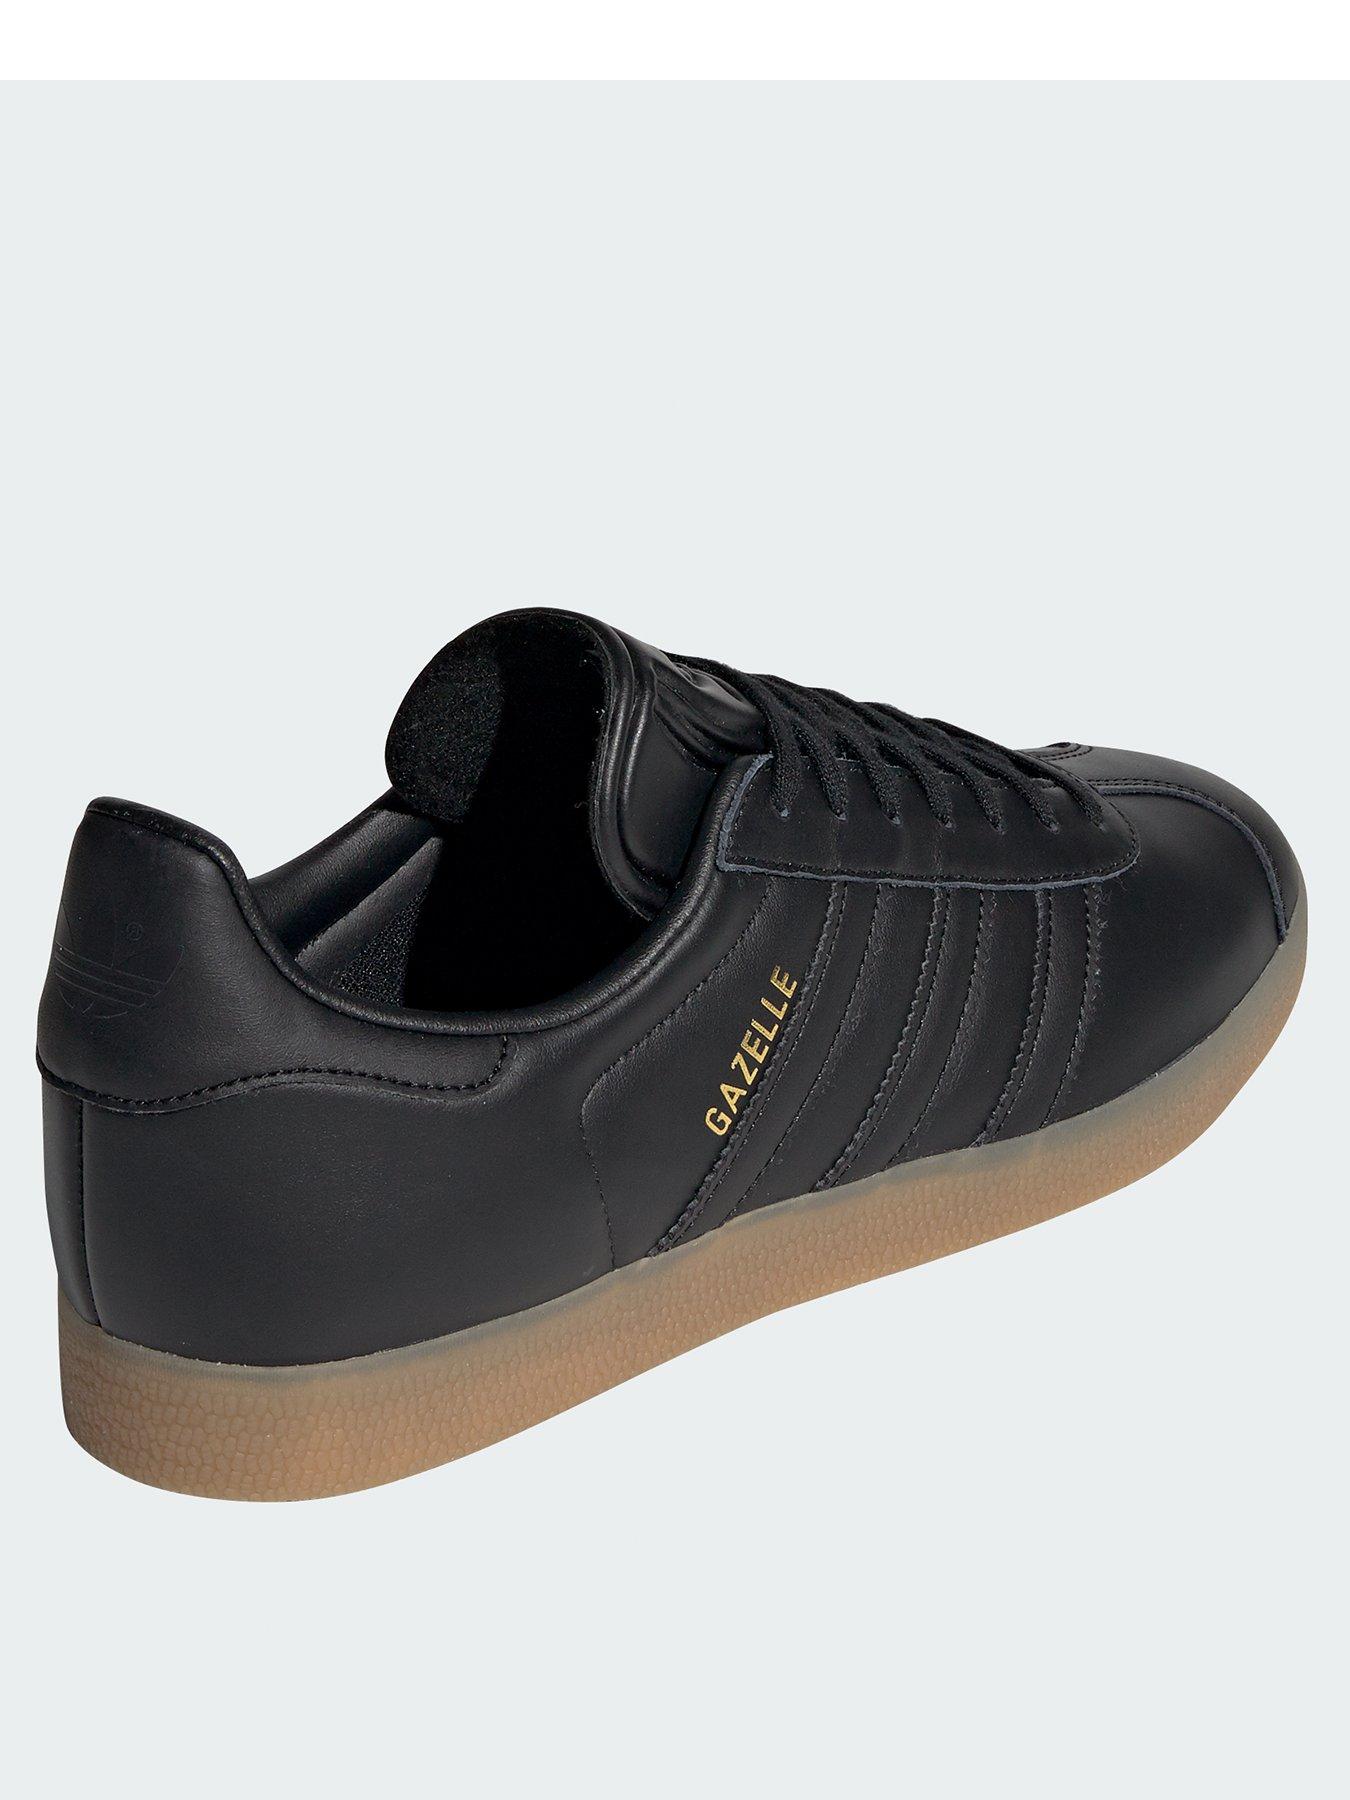 adidas gazelle black gum sole